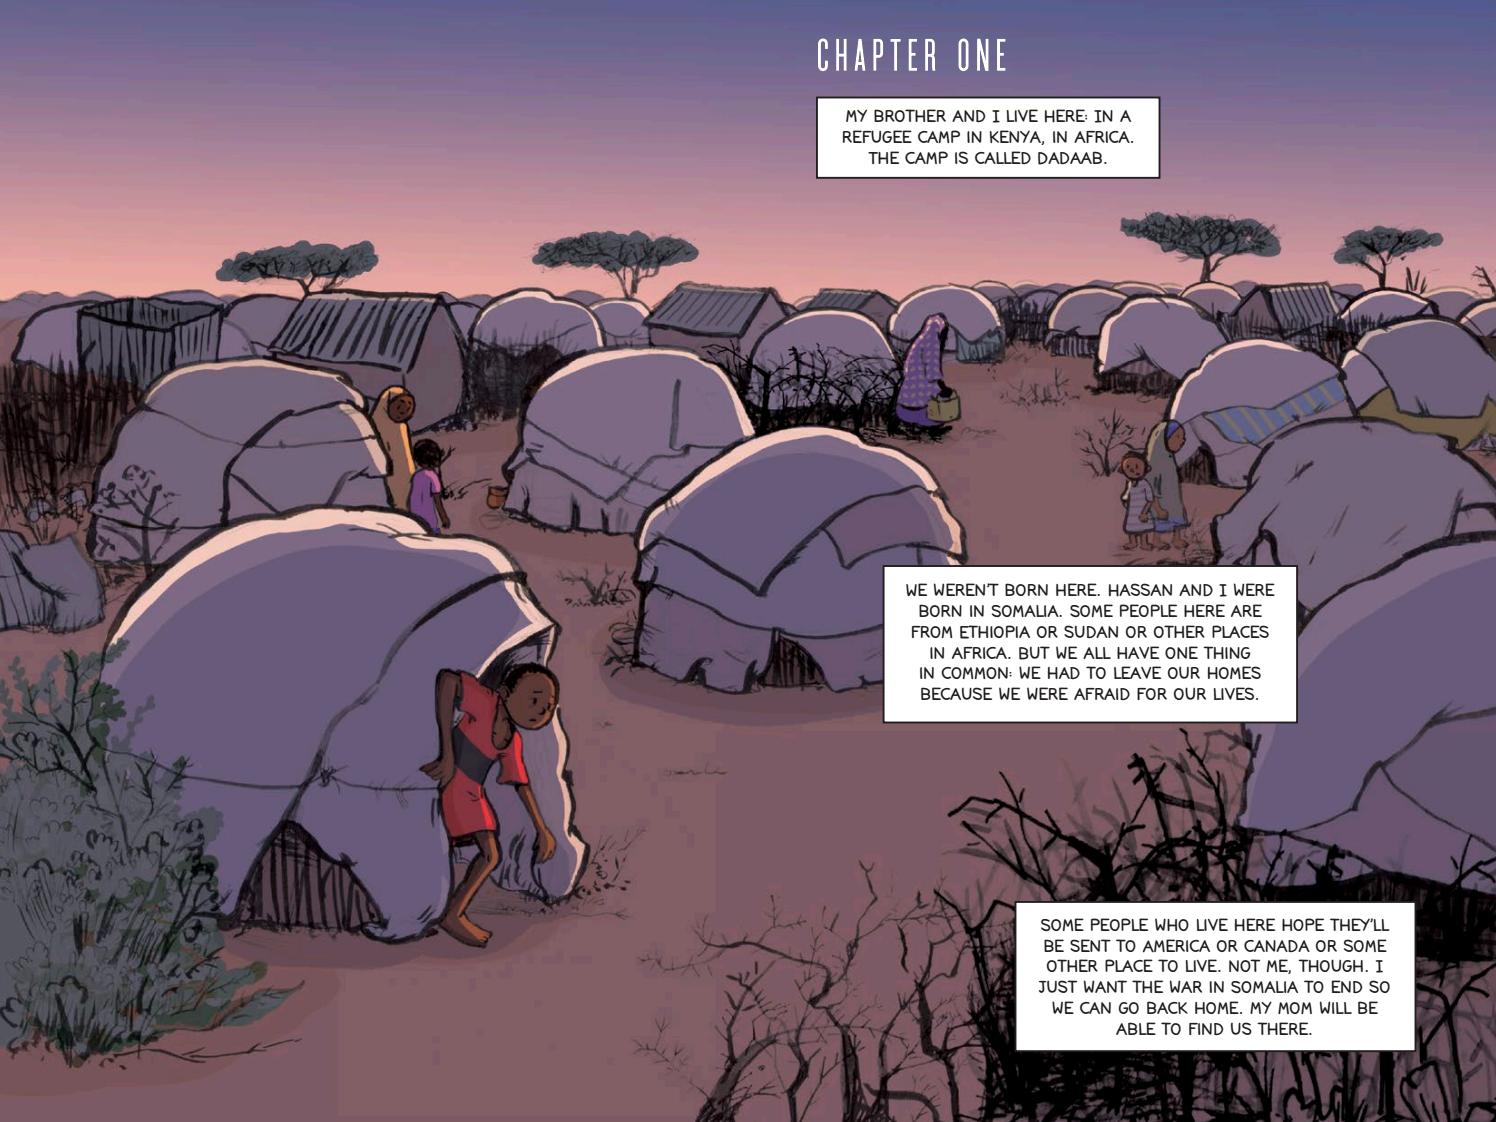 2-page illustration of refugee camp